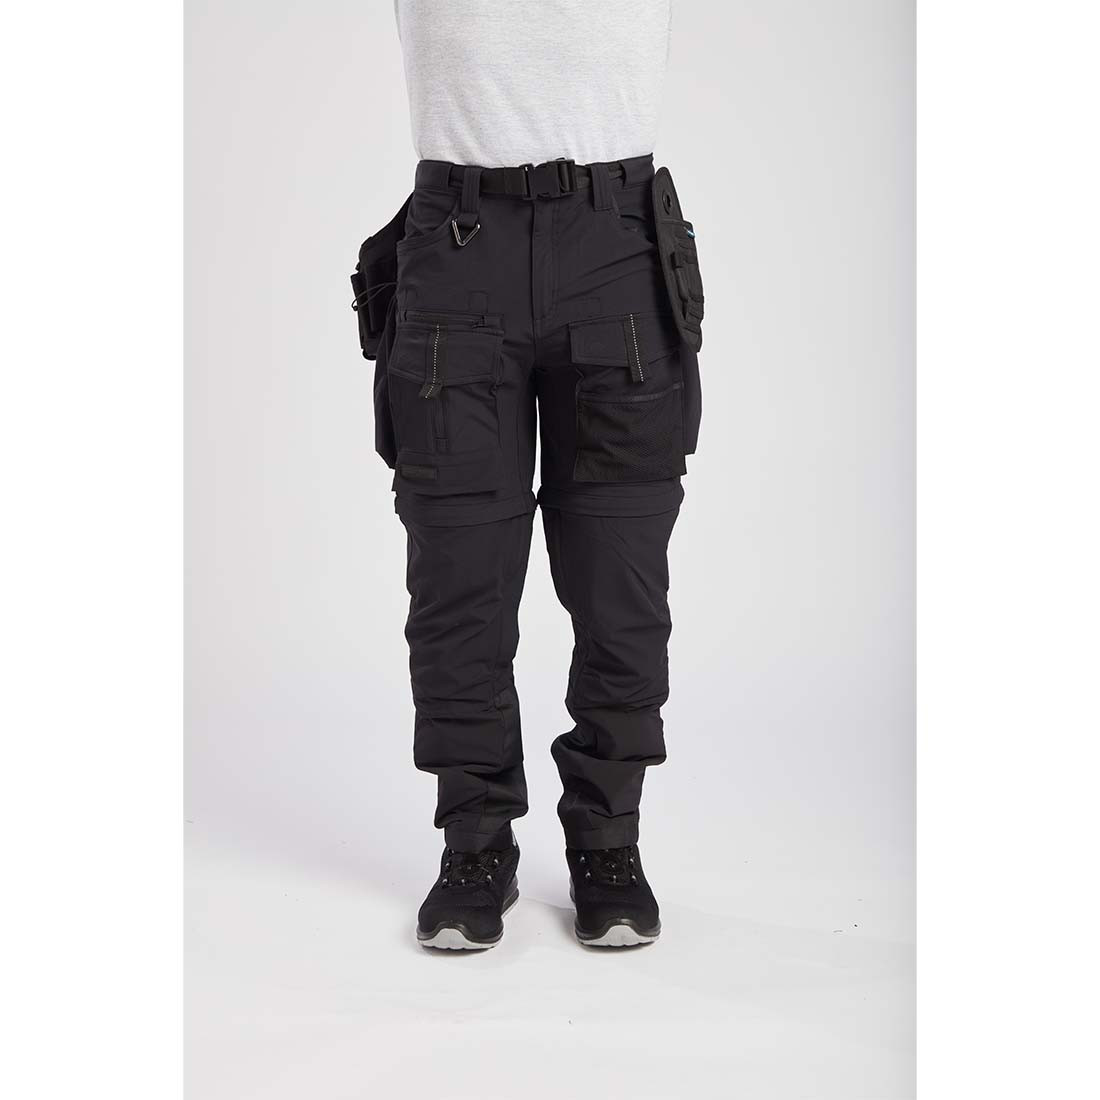 Pantalón Ultimate Modular 3 en 1 - Ropa de protección